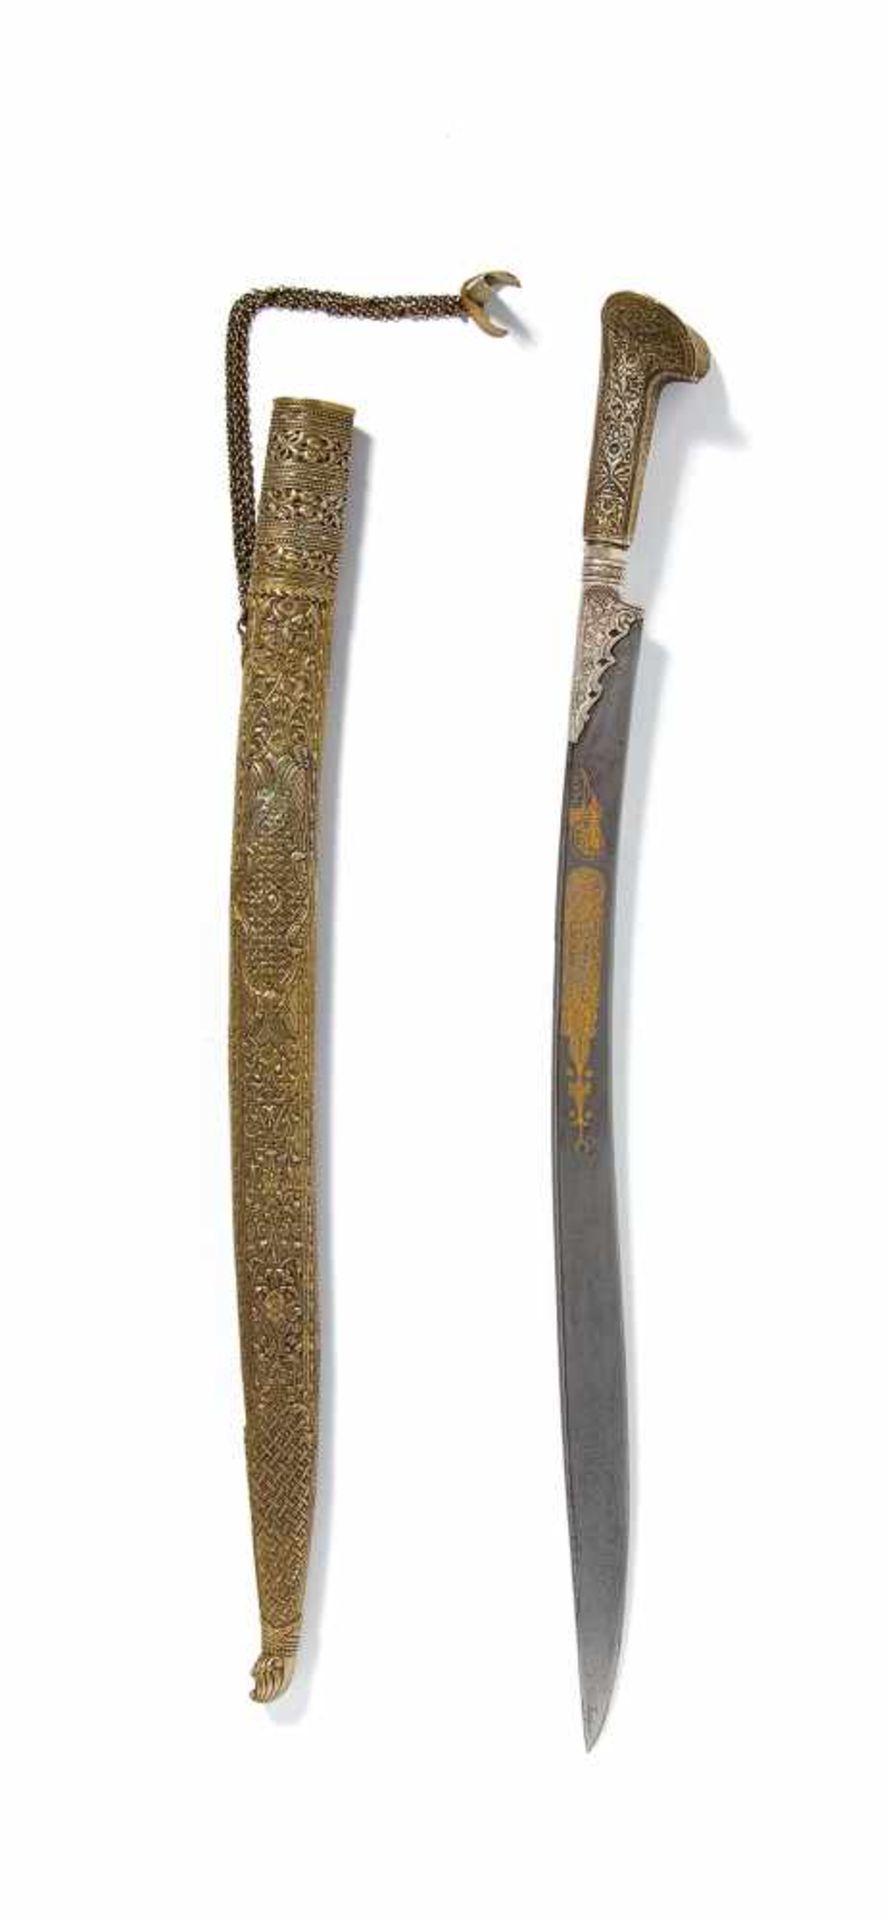 IMPORTANT YATAGAN SWORD. Persia or Caucasus. Dated in Islamic calendar to 1227 (=1812 in Western